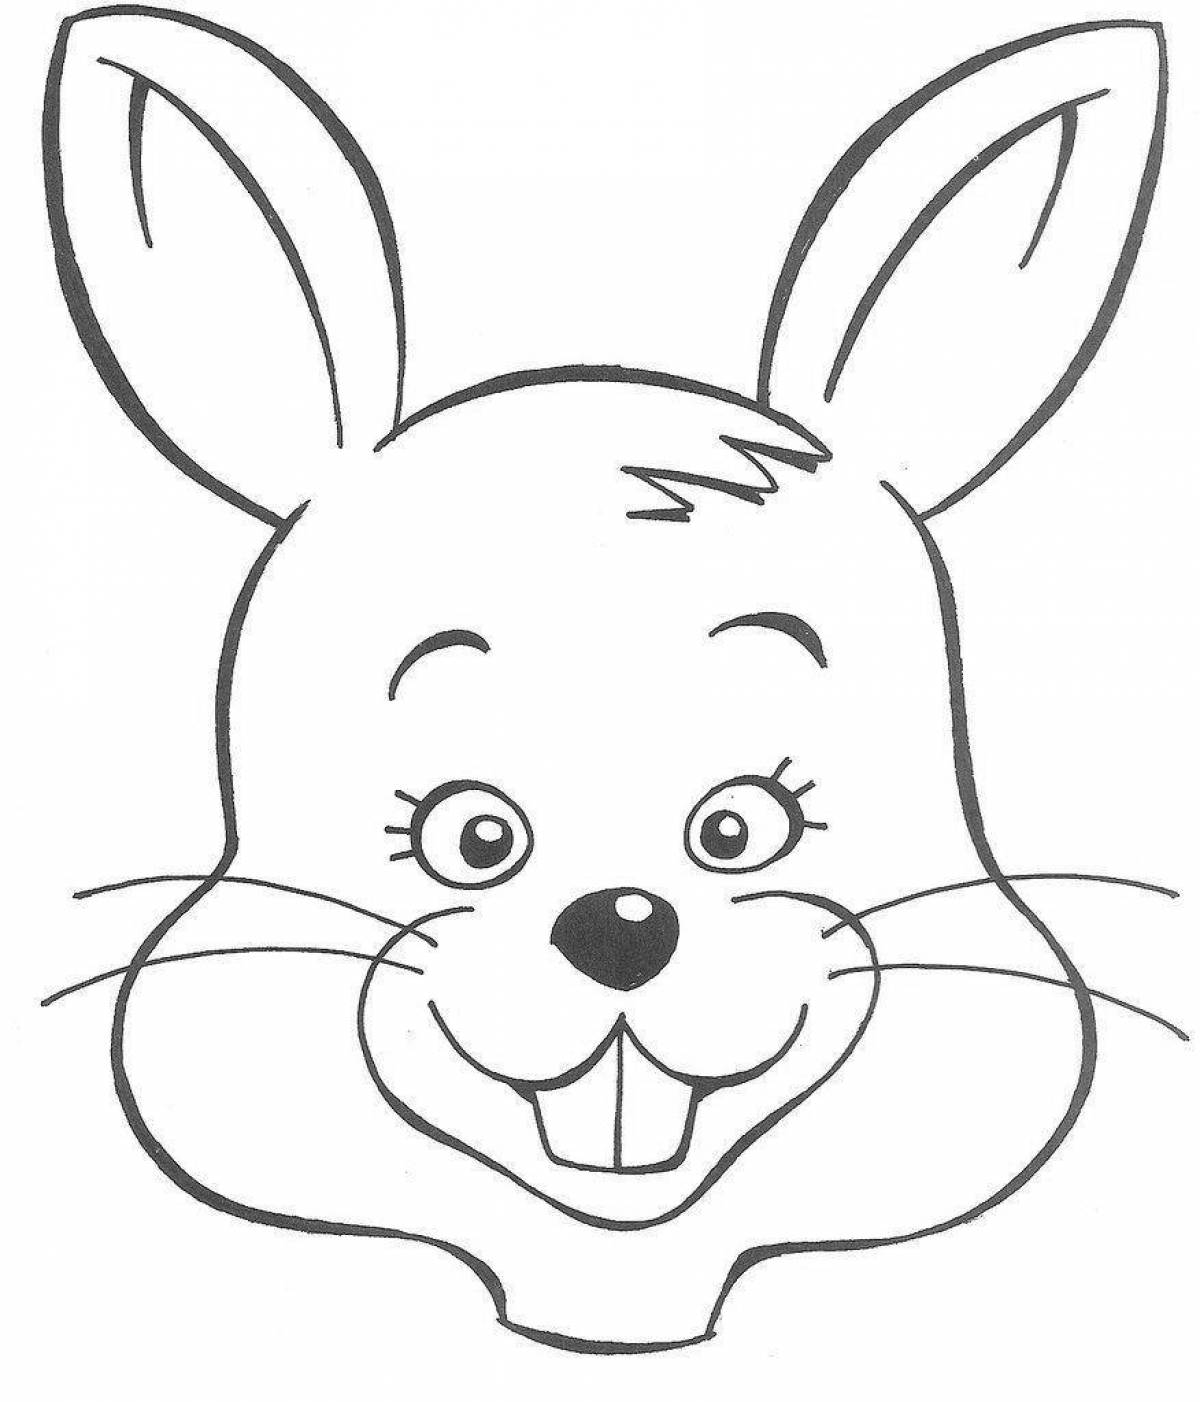 Adorable rabbit face coloring book